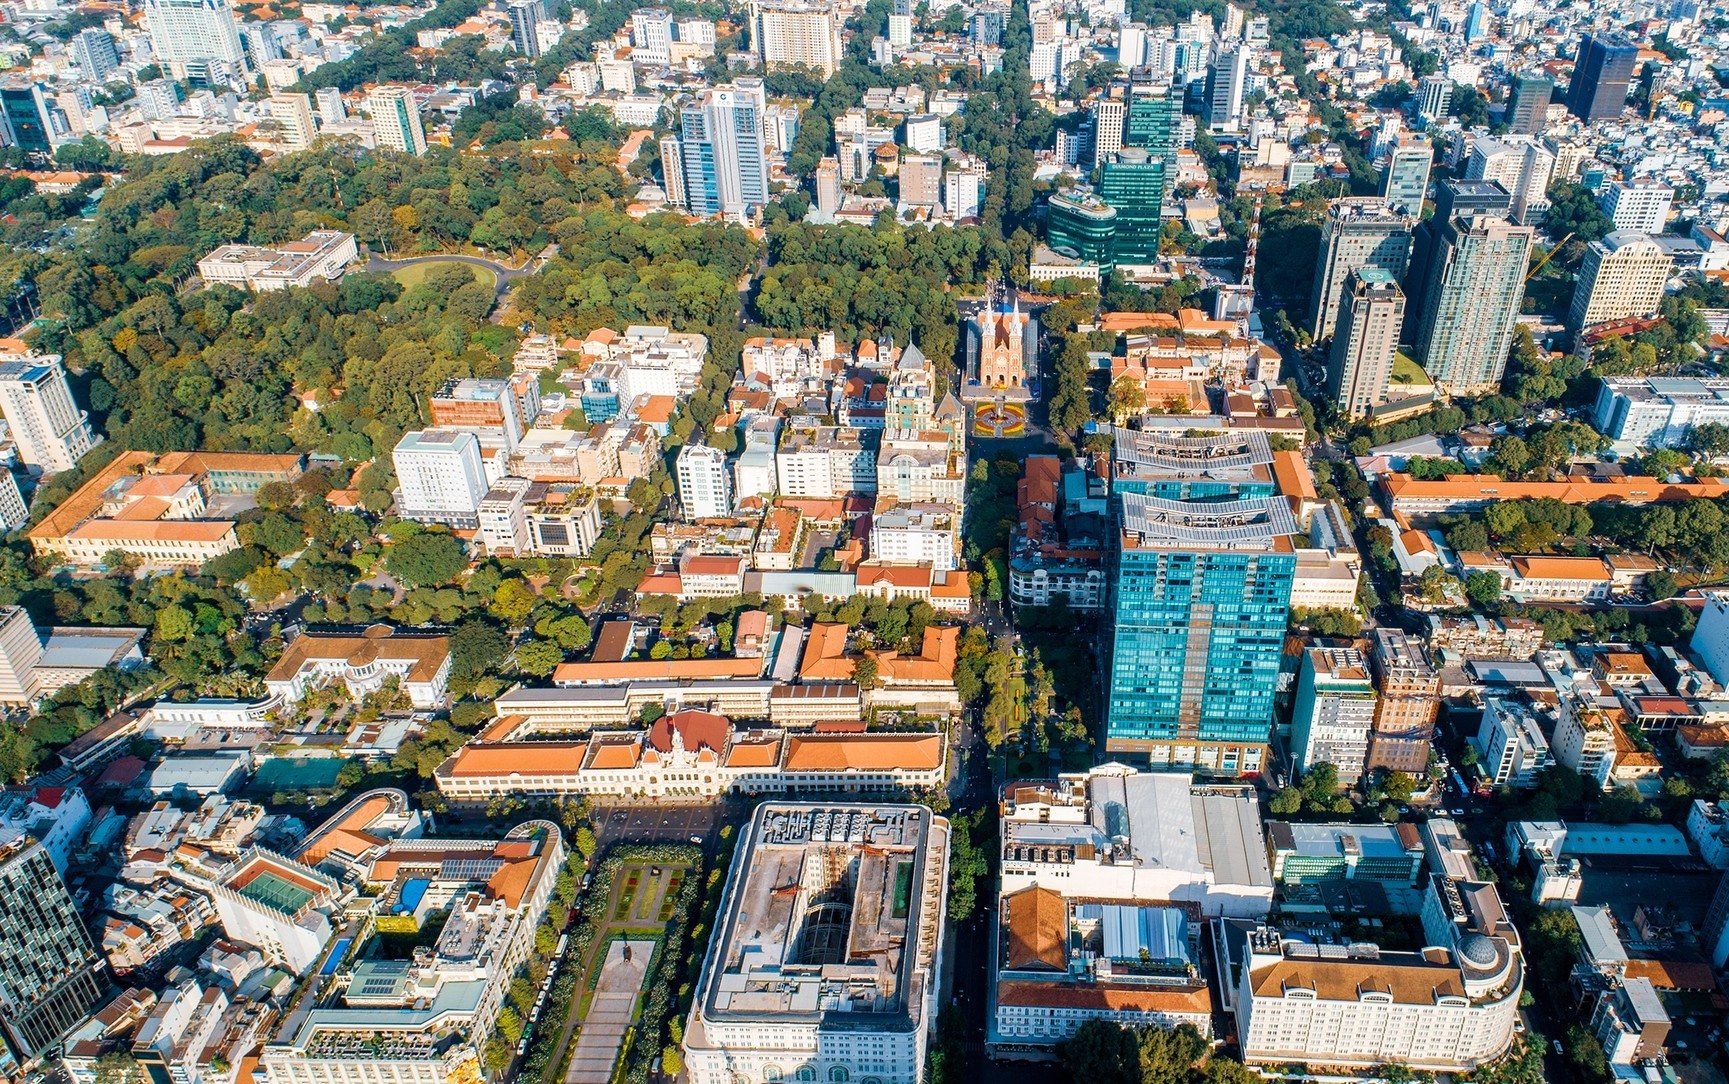 Dễ dàng tìm kiếm mua nhà đất theo danh sách các tuyến đường chính ở Thành phố Hồ Chí Minh, có thể nhà đất mặt tiền đường hoặc gần những tuyến đường bên dưới. Hiện tại, tính năng tìm mua nhà đất theo đường mới chỉ áp dụng riêng đối với quận Thủ Đức.